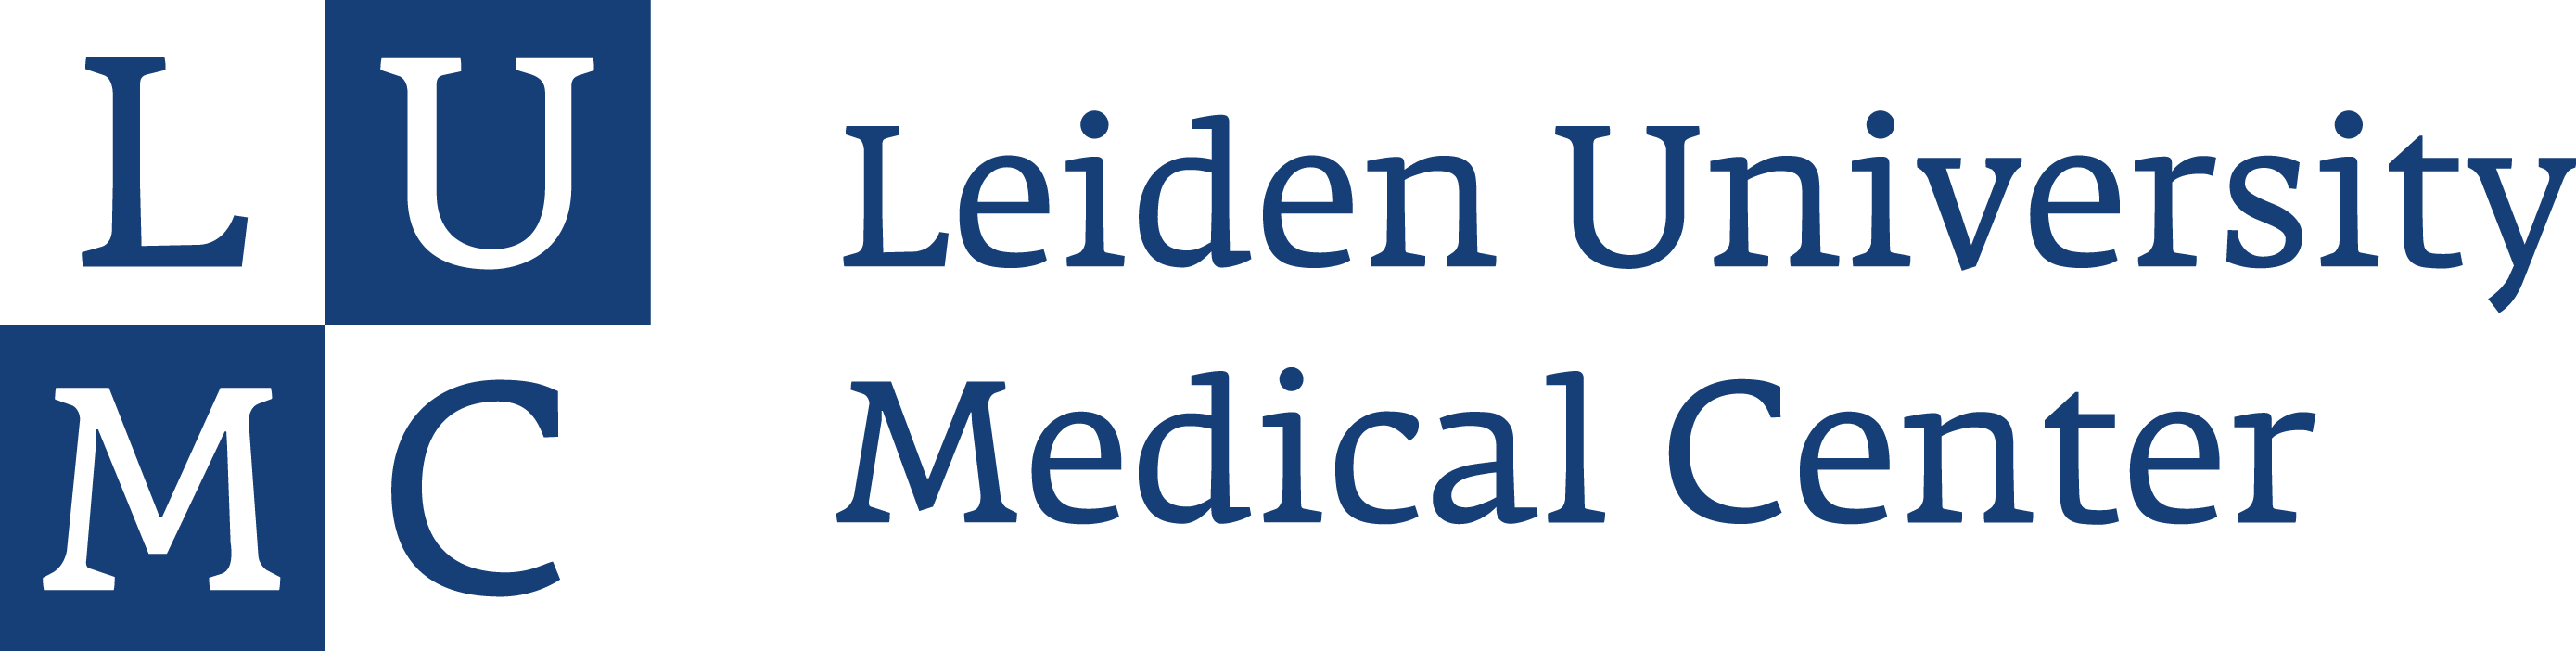 Leiden University mediacal center logo